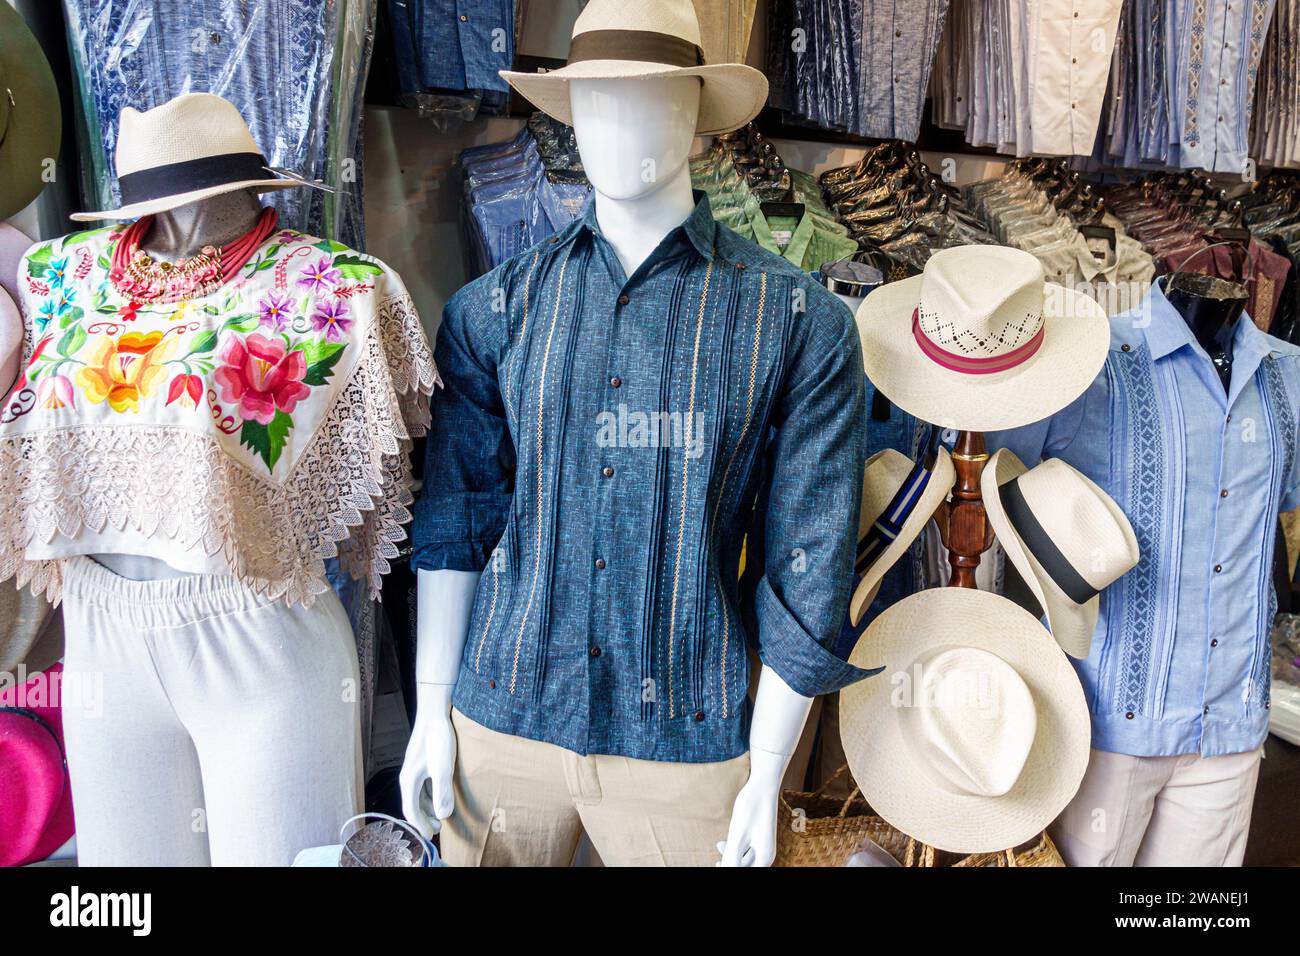 Merida Mexico, centro storico storico, manichini di abbigliamento donna uomo, cappelli fedoras, interni interni interni, negozio di articoli per affari Foto Stock